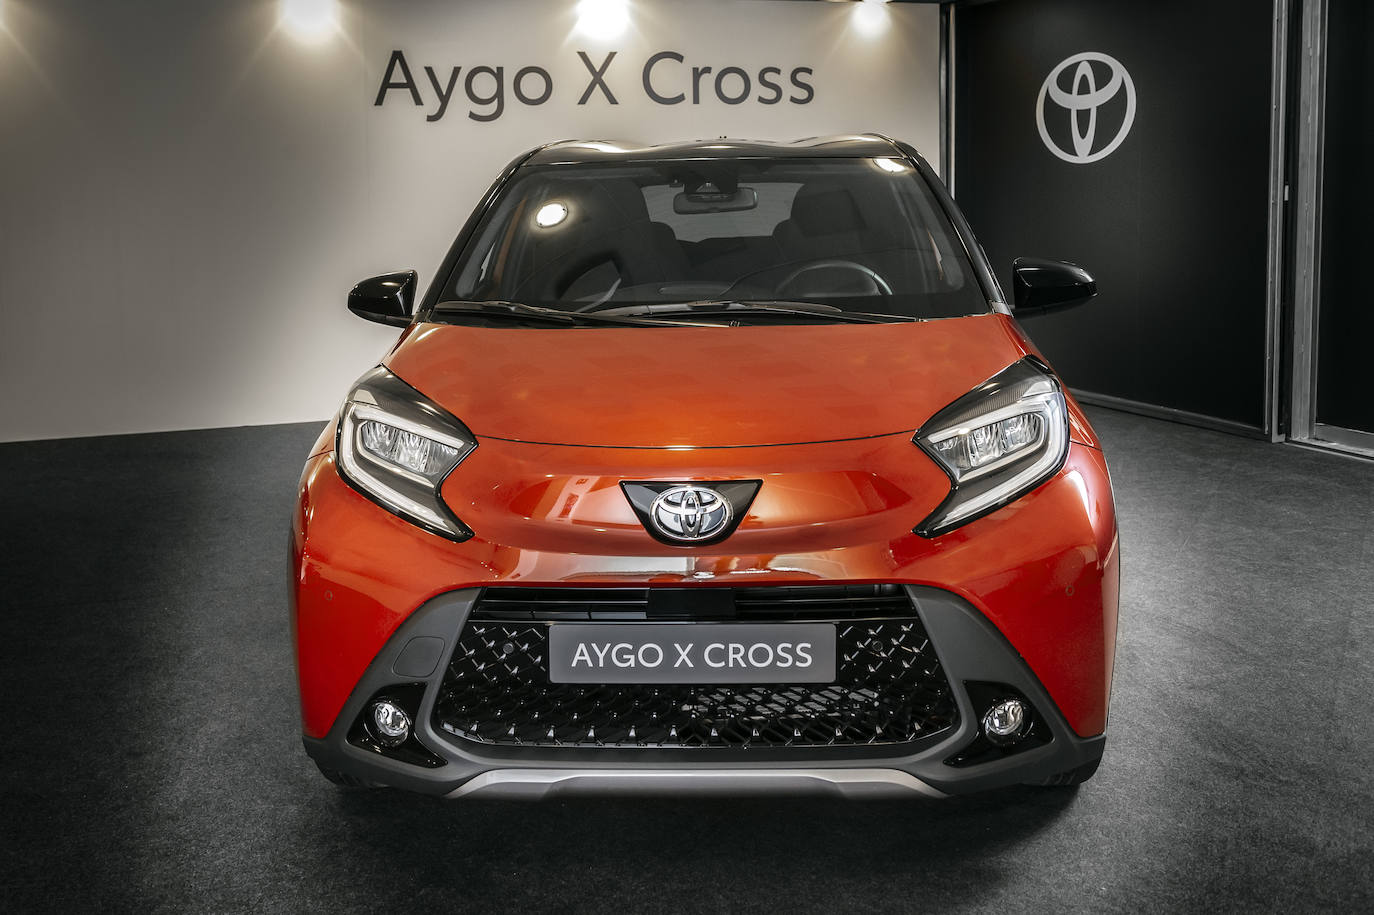 Fotos: bZ4X, Aygo X Cross y GR86: la nueva familia Toyota